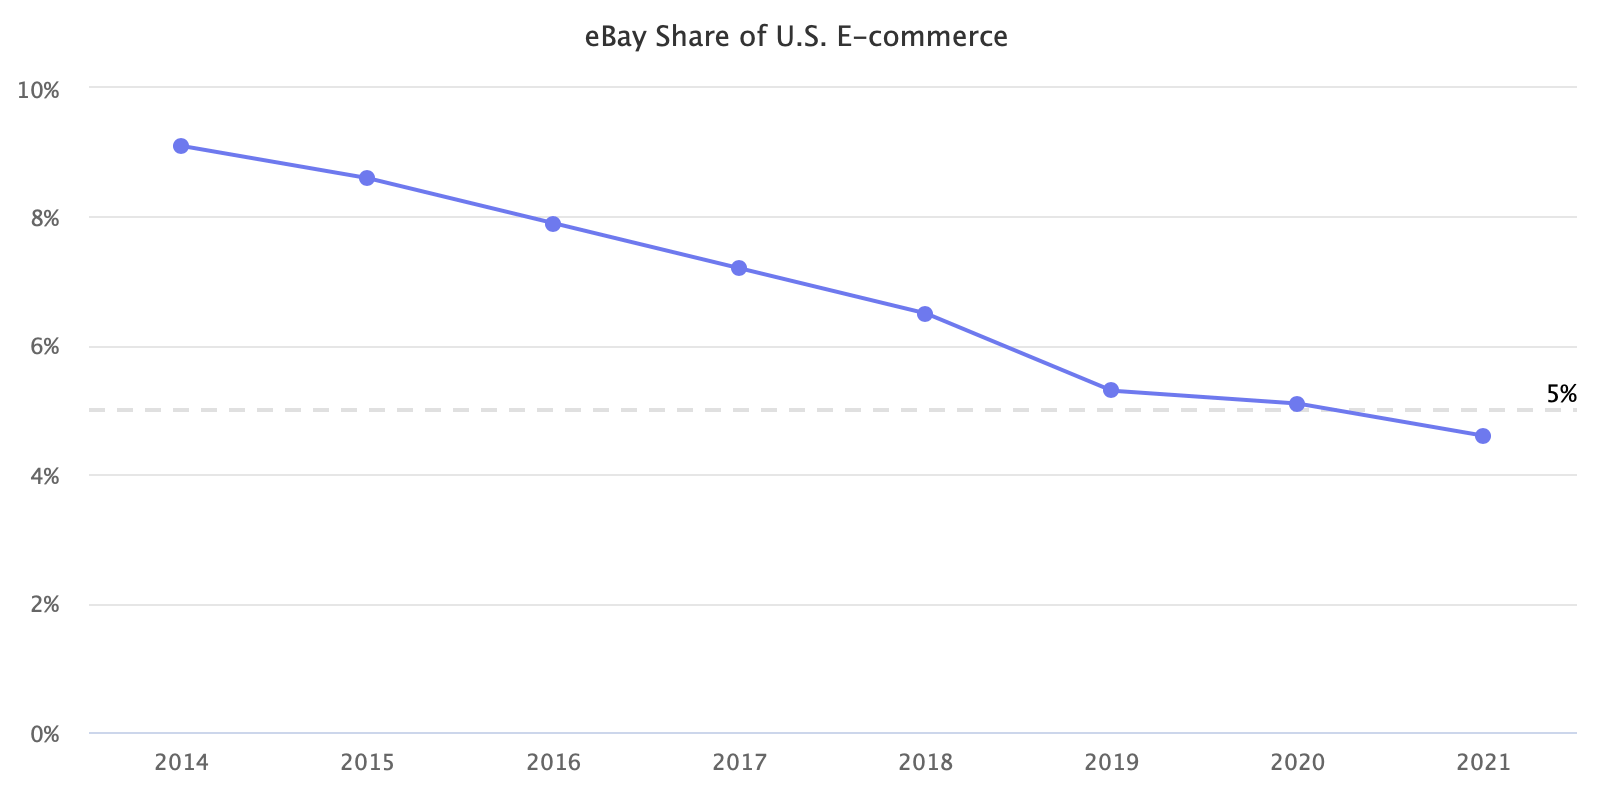 eBay Share of U.S. E-commerce